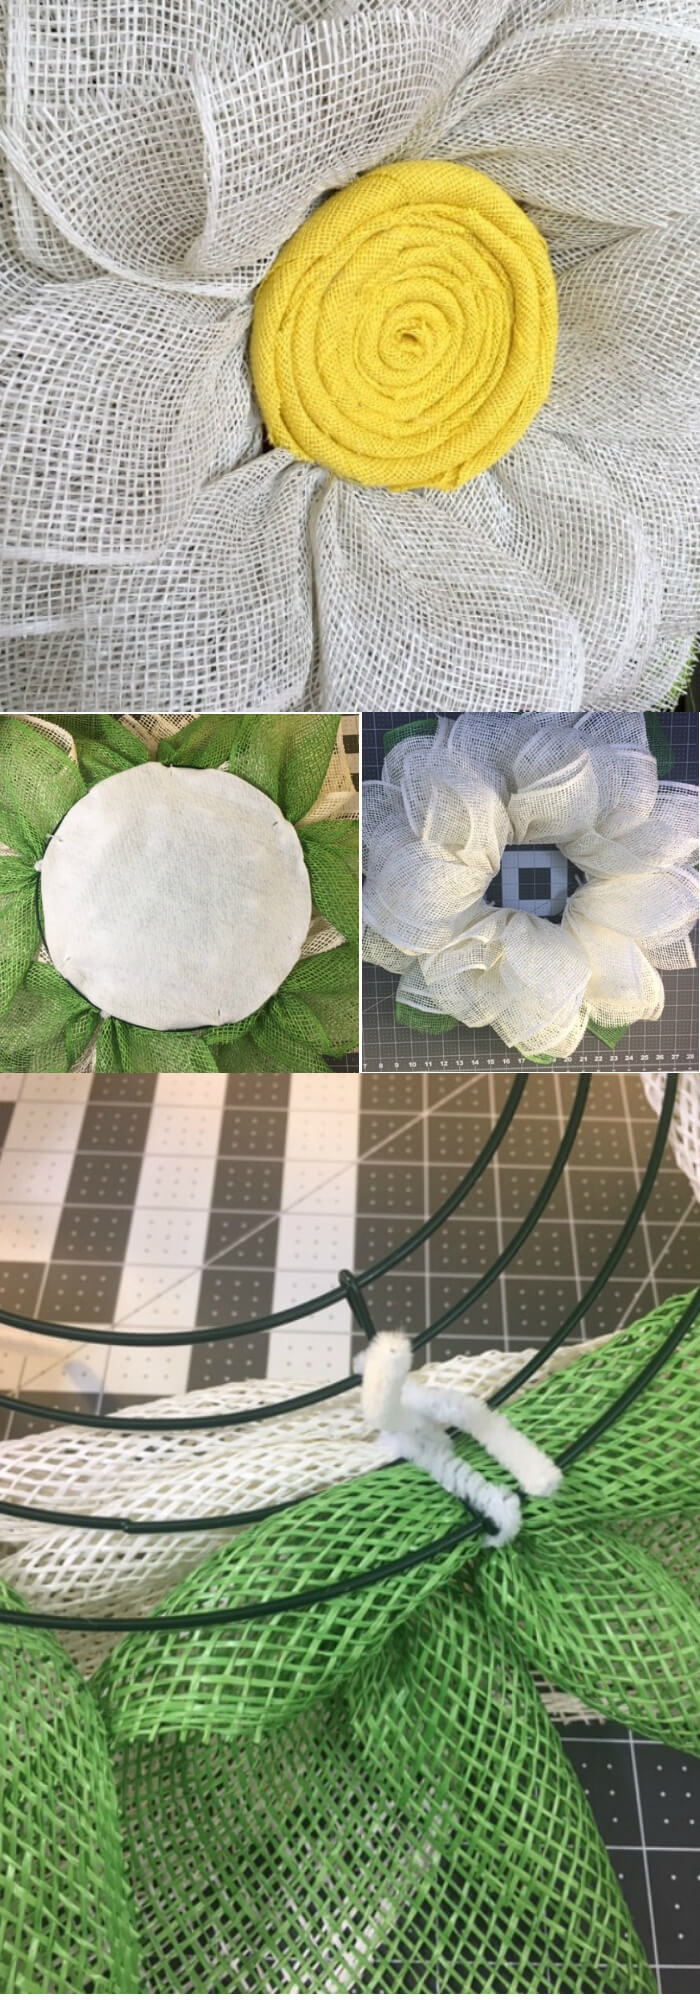 Easy and Simple DIY Spring Wreath Ideas | A Burlap Daisy Wreath